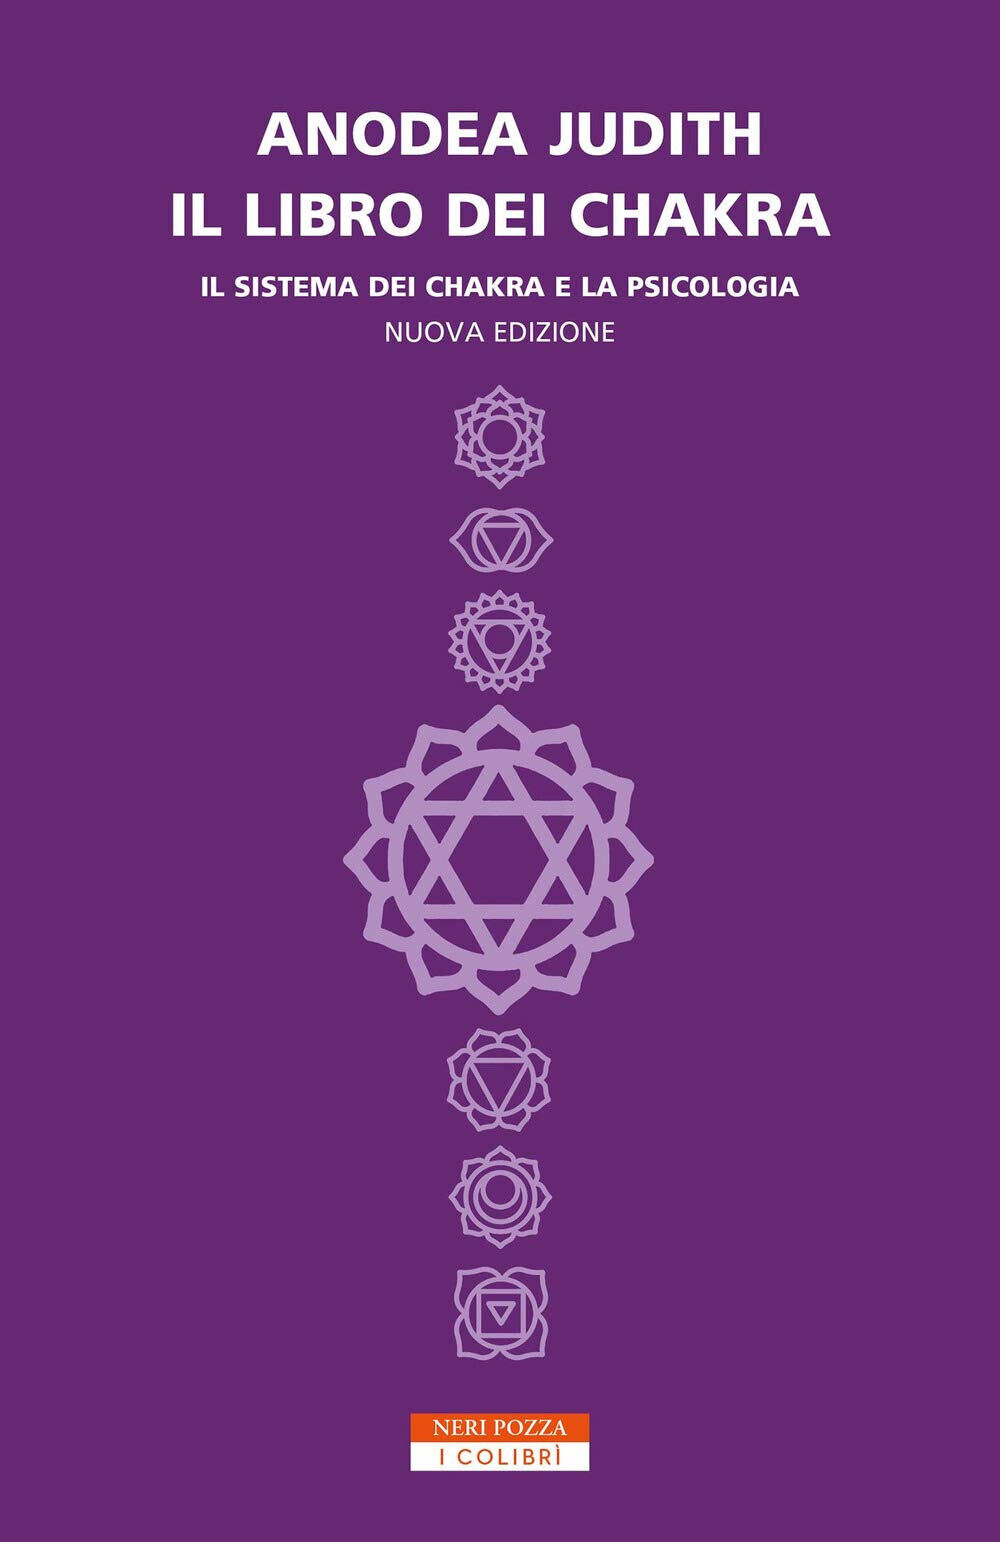 Il libro dei chakra - Anodea Judith - Neri Pozza, 2020 libro usato